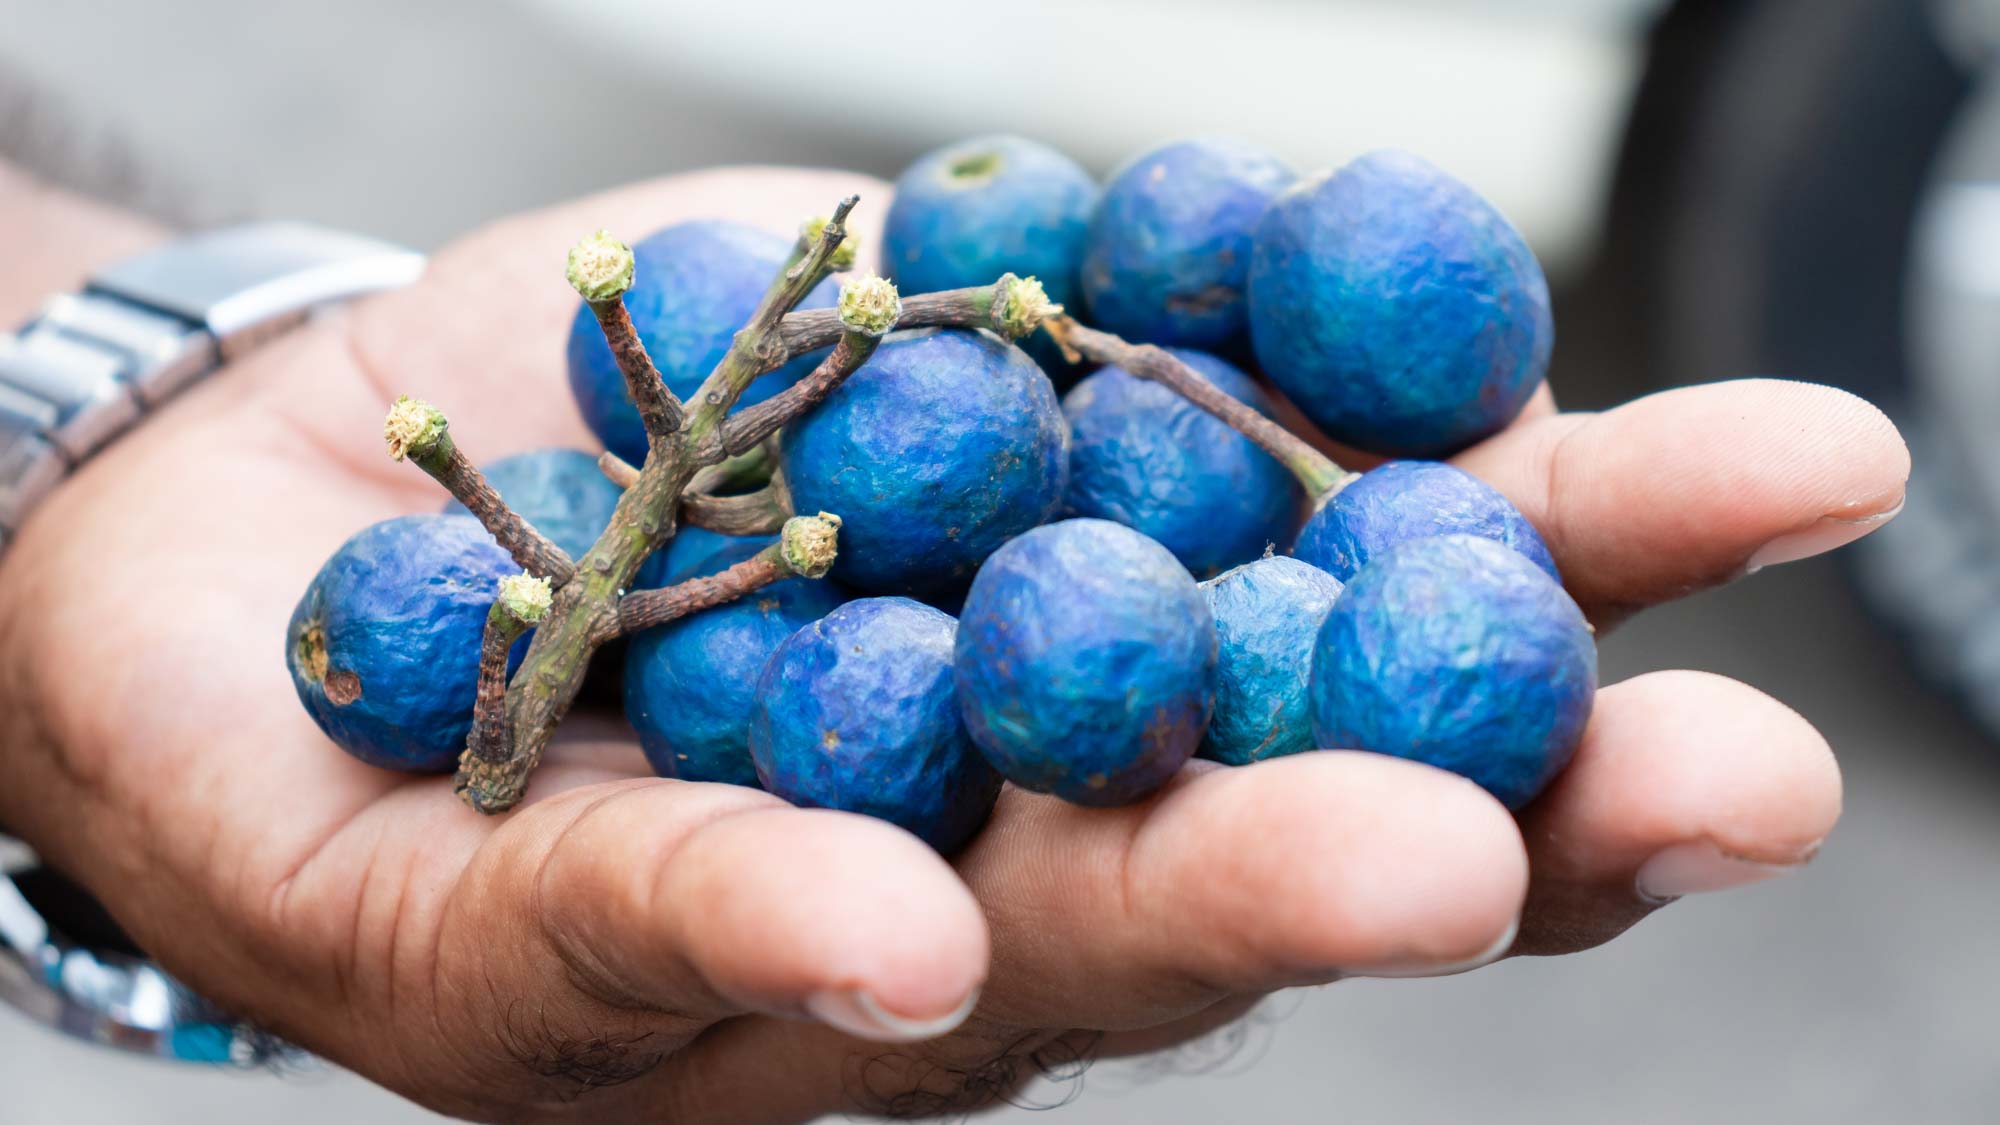 Hand holding Ceylon Blue Olives